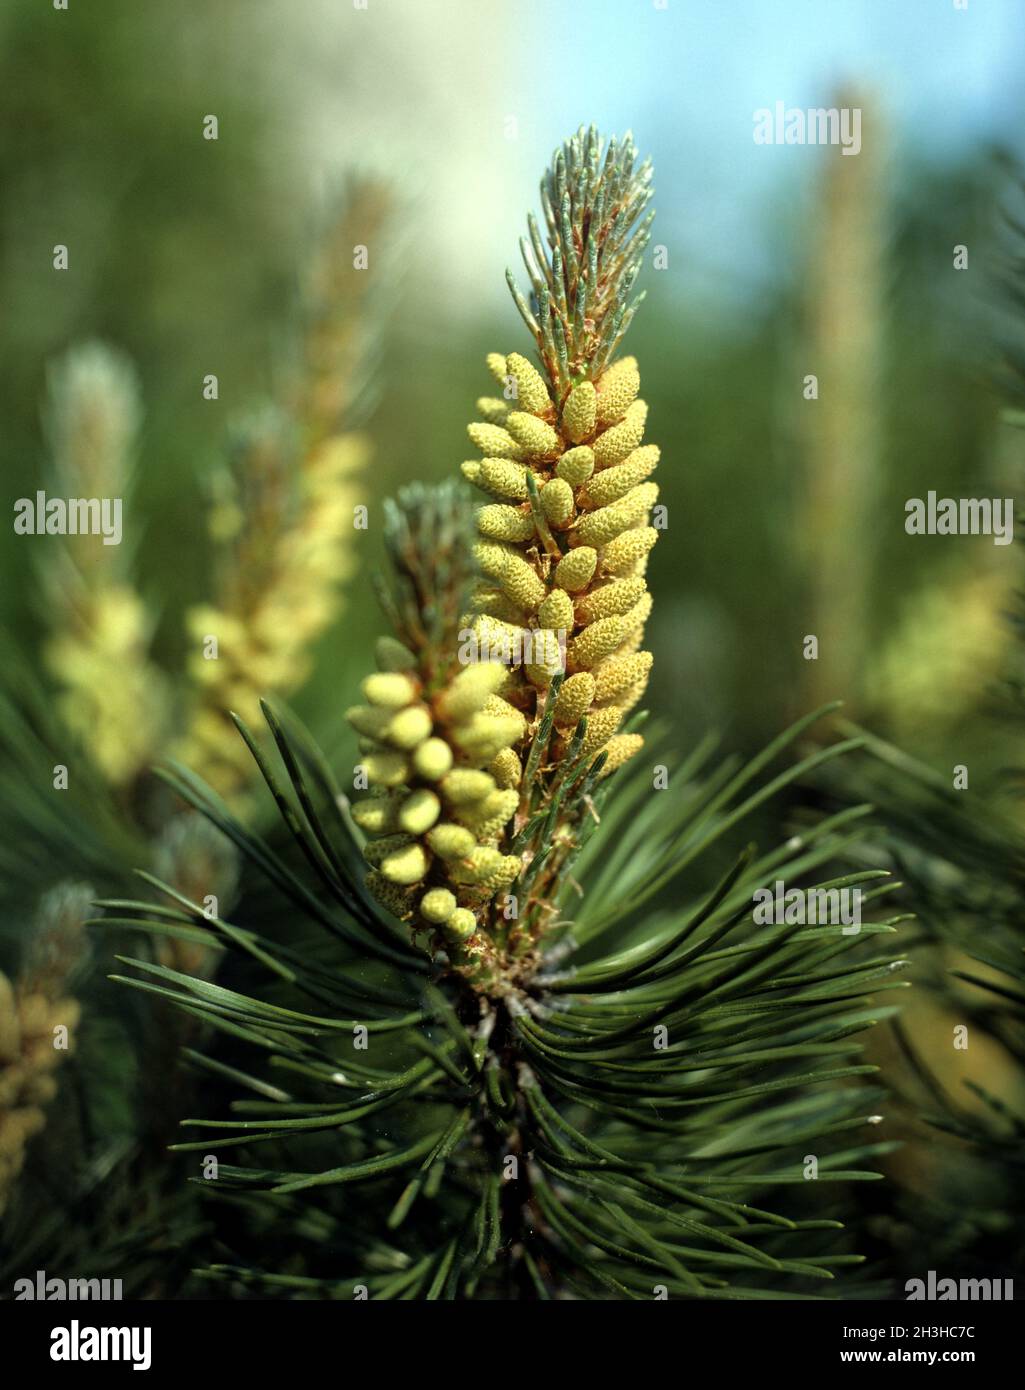 Mountain pine, pine, Pinus mugo Stock Photo